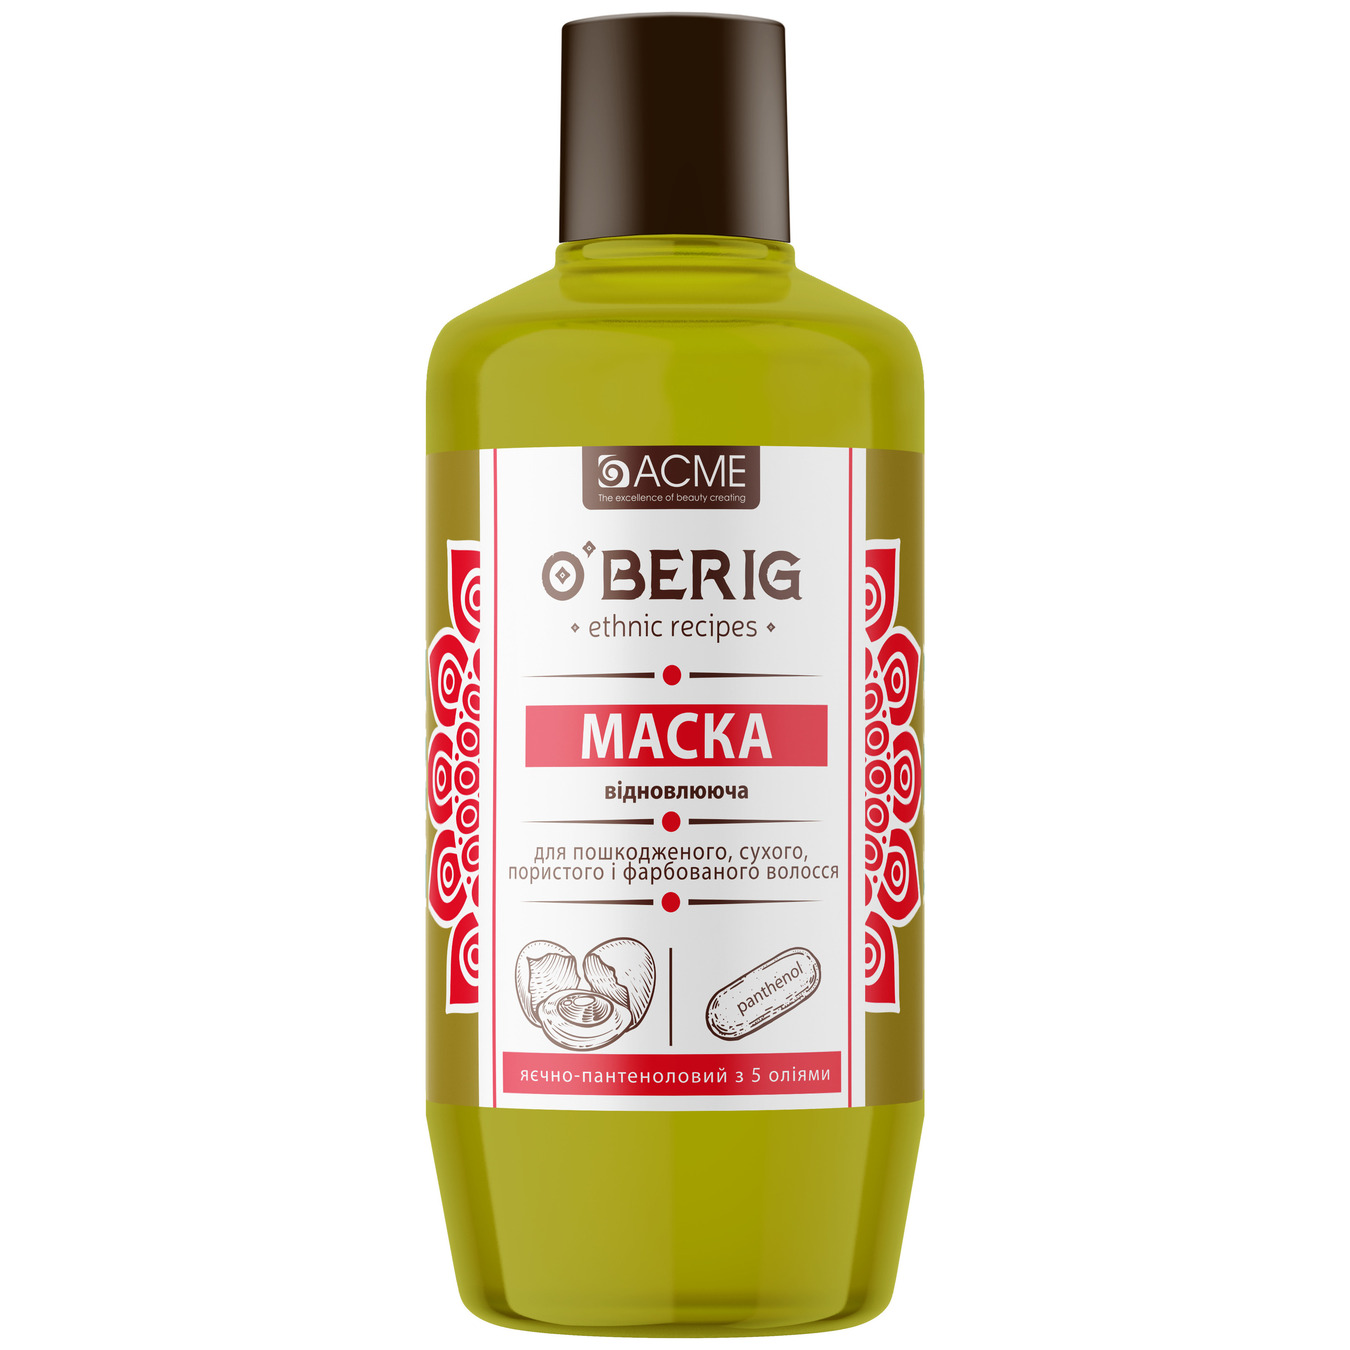 Маска-масло O'Berig для волос поврежденных сухих пористых и крашеных яично-пантеноловый с 5 маслами 500 мл